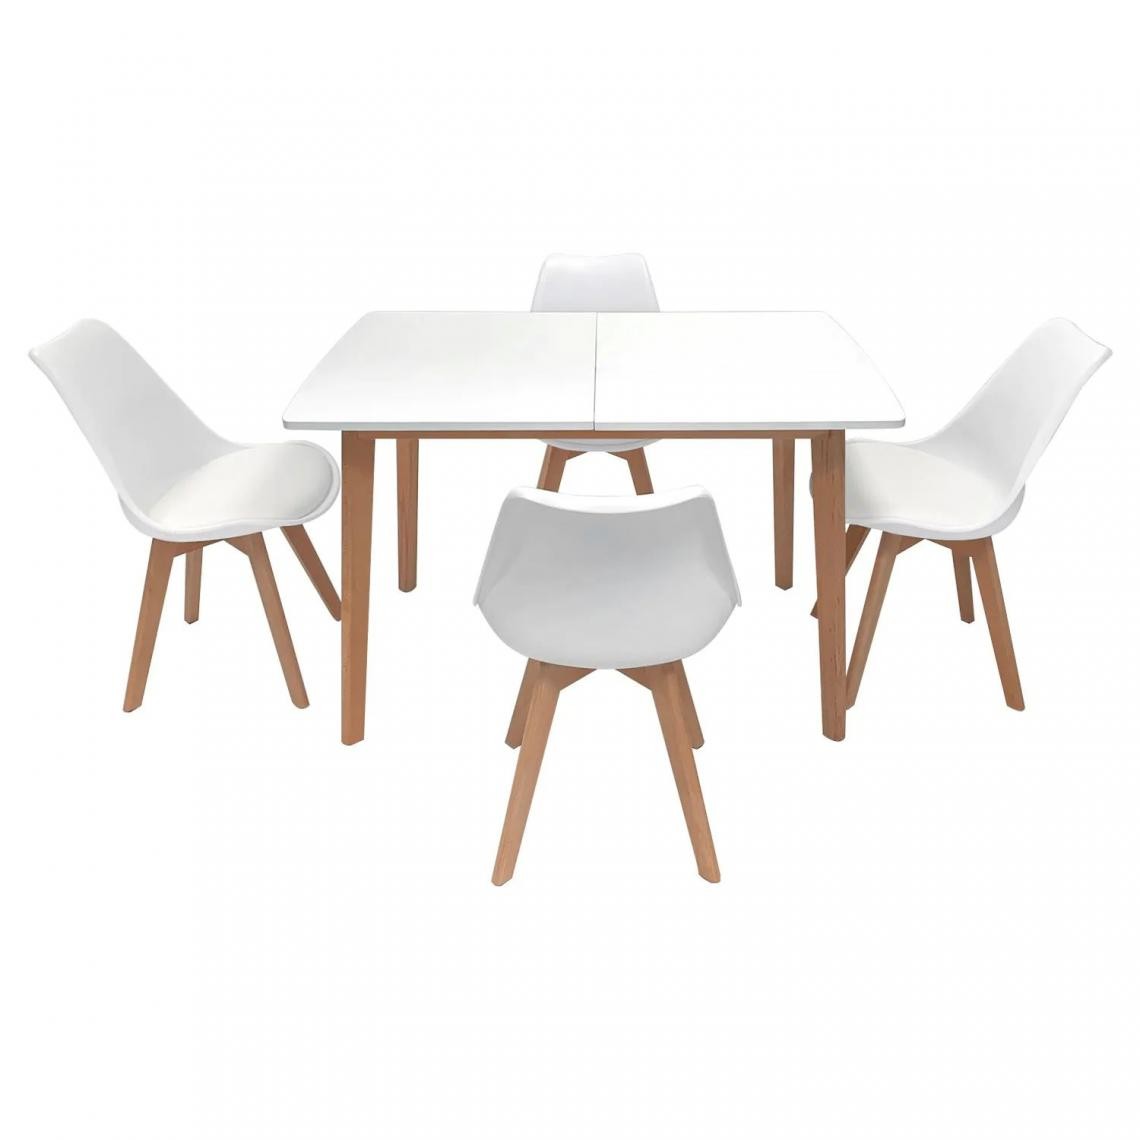 Beneffito - SENJA - Ensemble Table Extensible 120/160 x 80 cm et Chaises Scandinaves - BLANC - X4 Chaises - Tables à manger